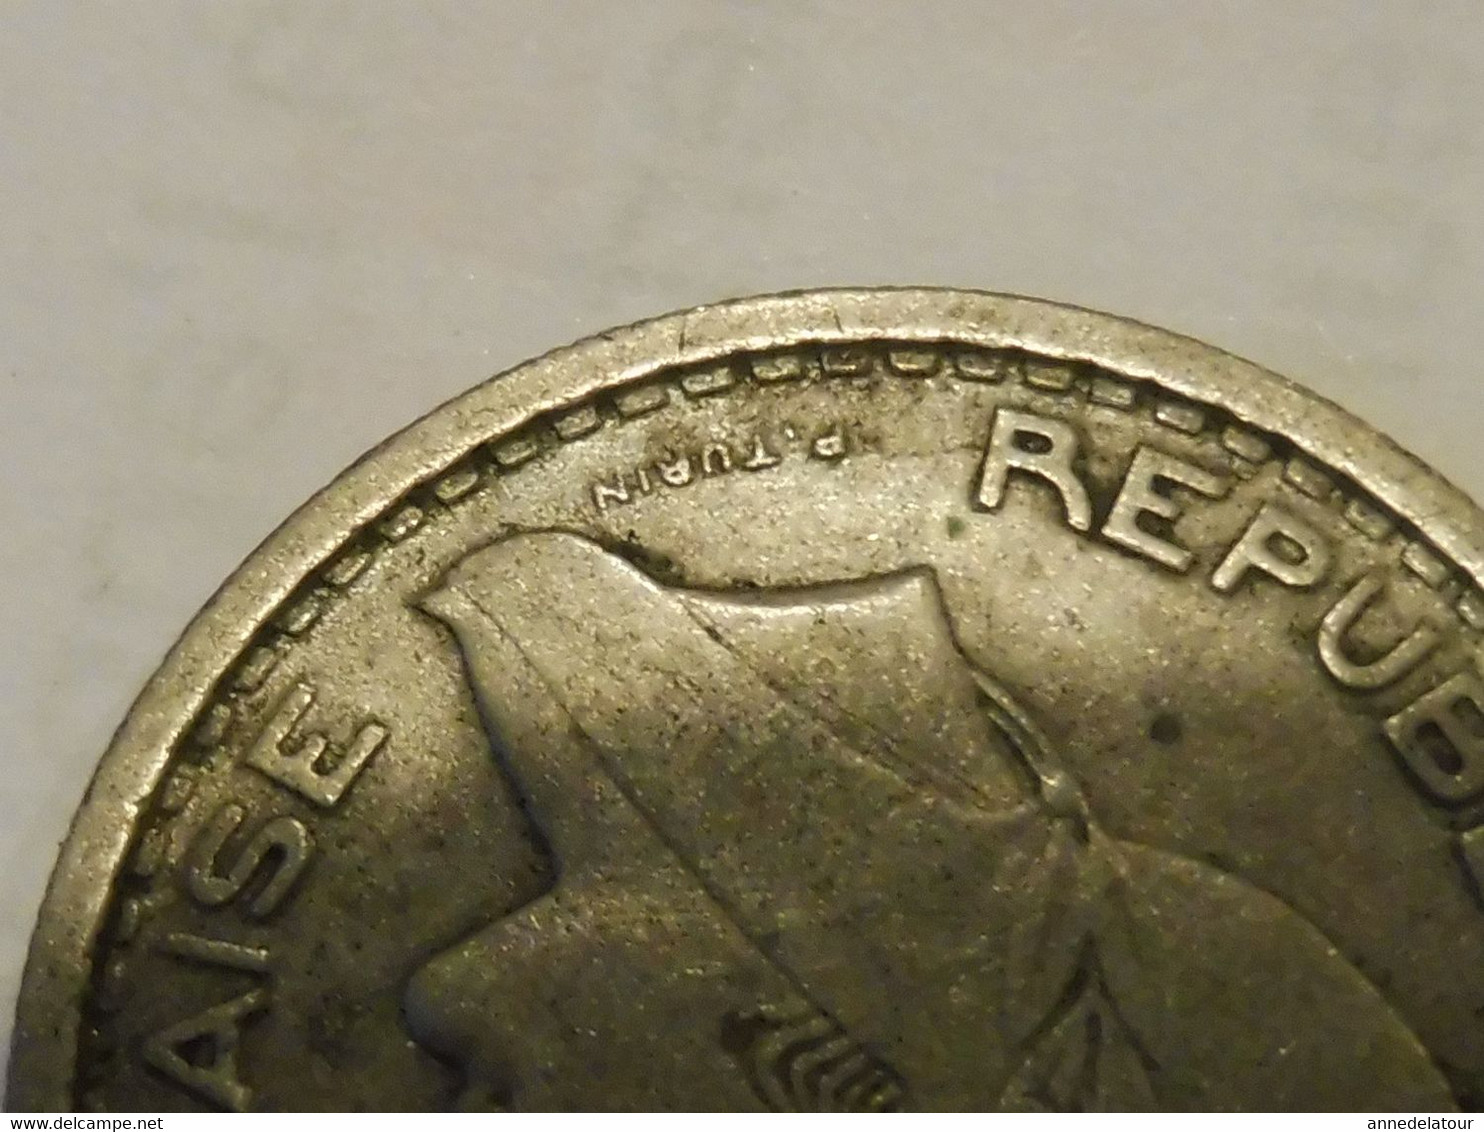 Lot de 3 pièces de 20 francs ALGERIE  (métal nickel) Année 1949 (2 unités) , Année 1956 (1 unité)- graveur Turin